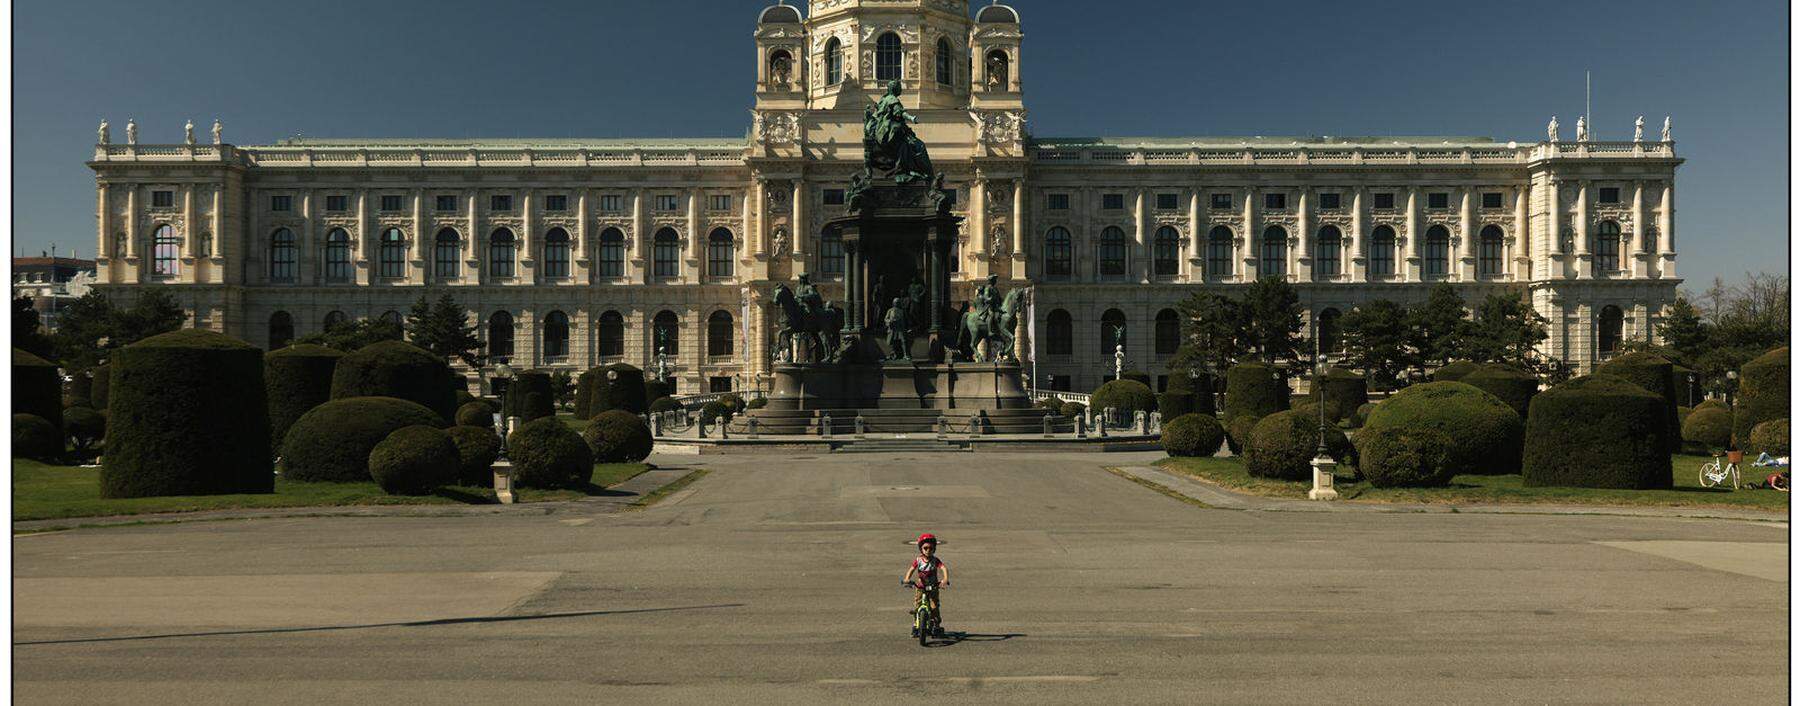 Wie kann man eine überhitzte Zivilisation abkühlen? Wien im Lockdown, fotografiert von Lukas Beck.